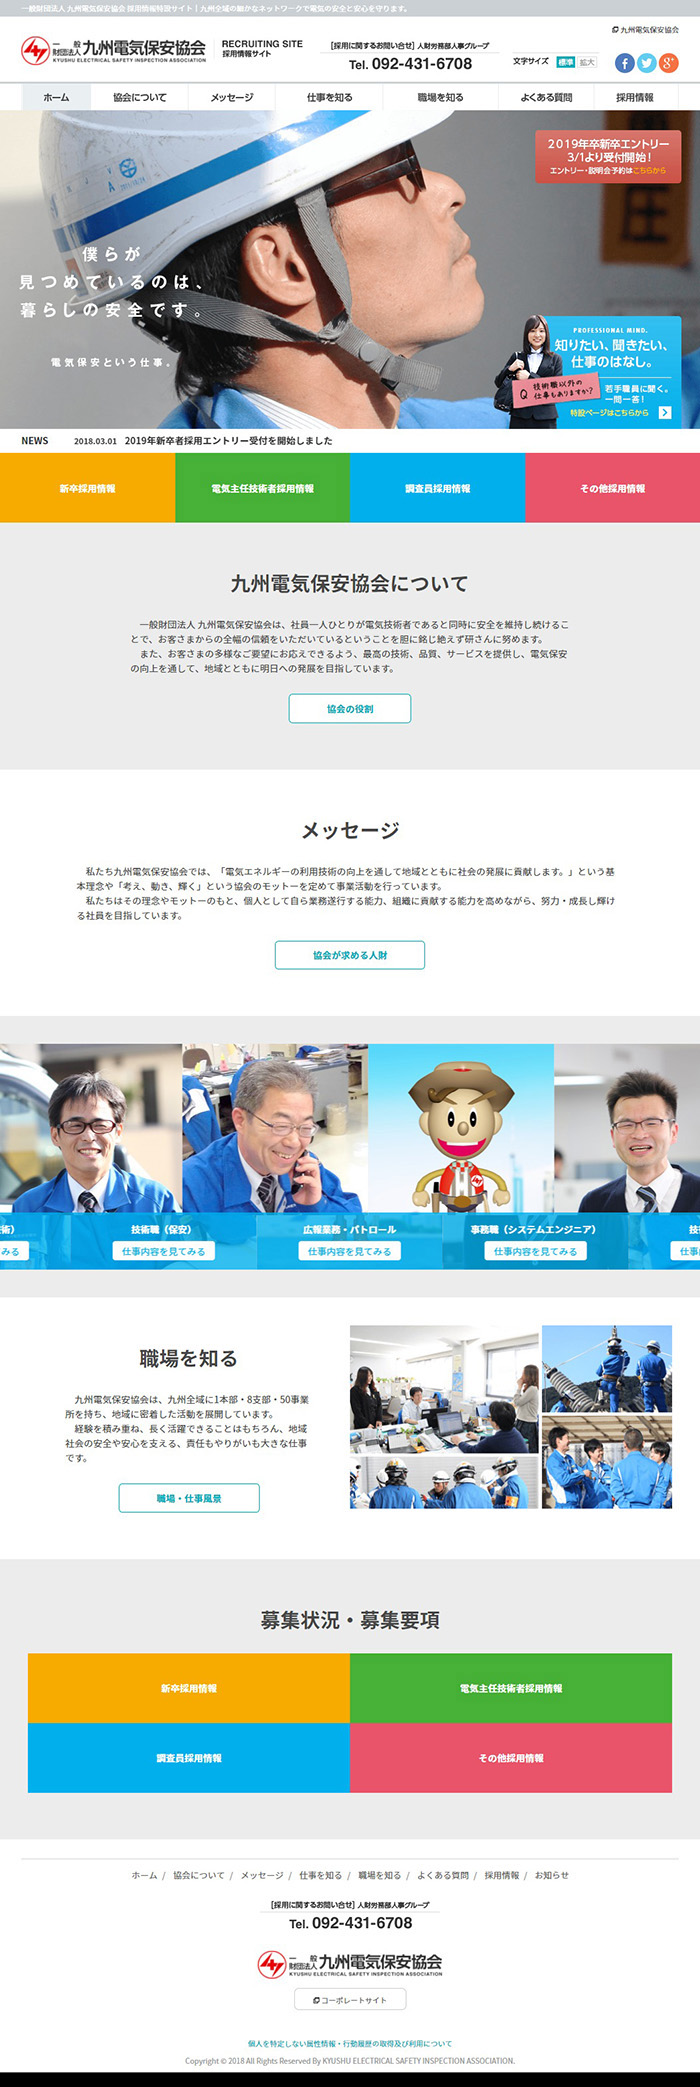 九州電気保安協会様採用特設サイト制作実績 デスクトップイメージ